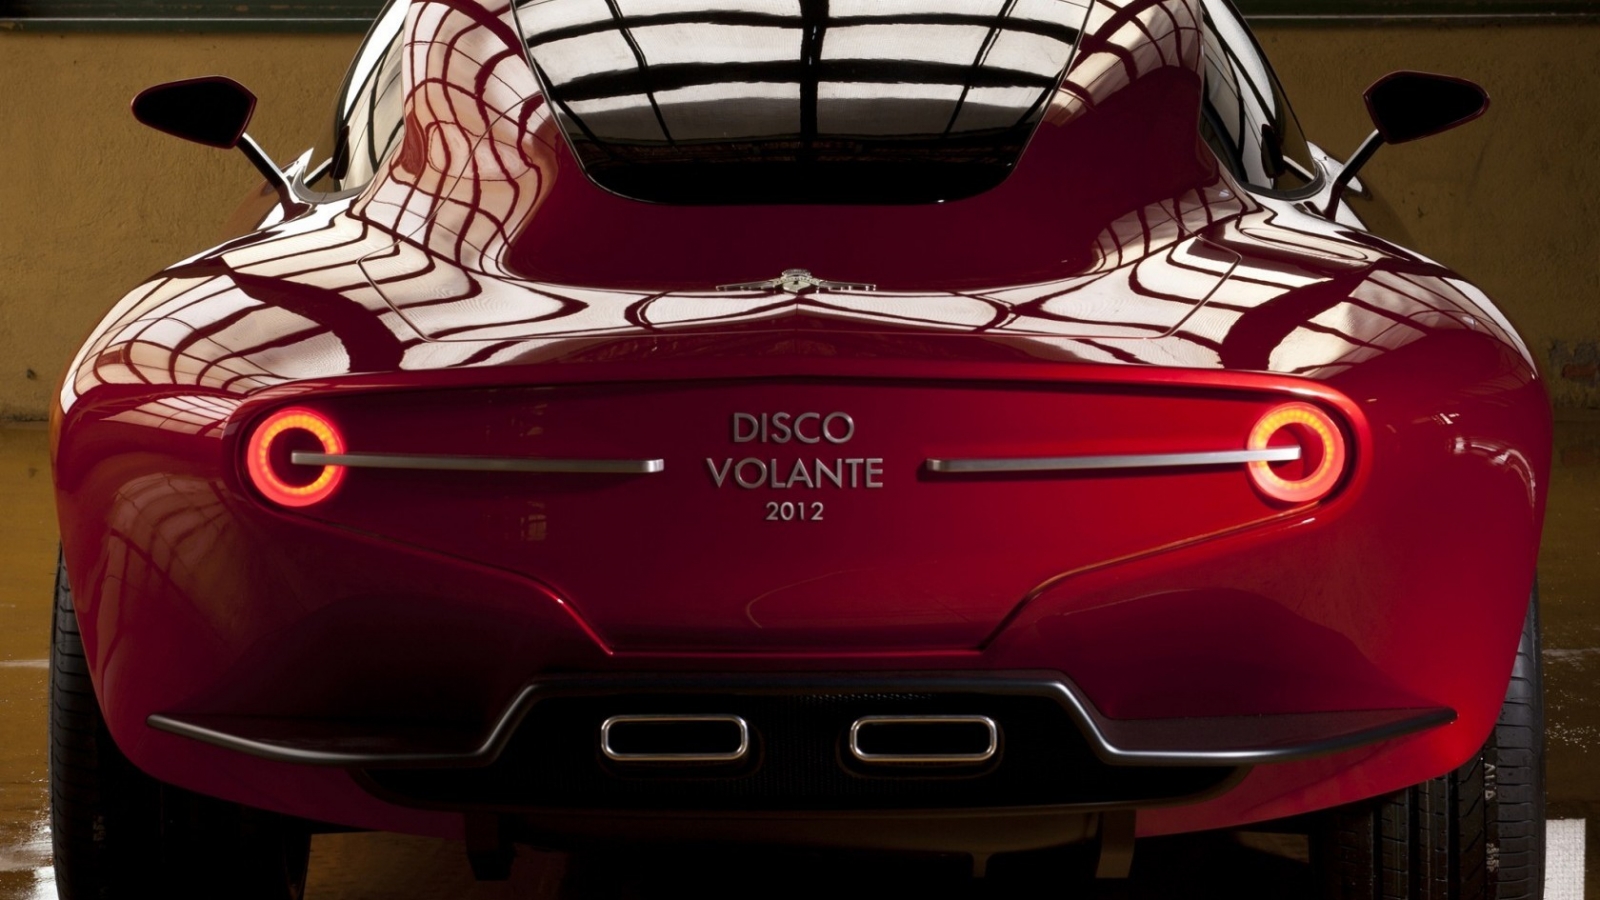 Alfa Romeo Disco Volante 2012 for 1600 x 900 HDTV resolution